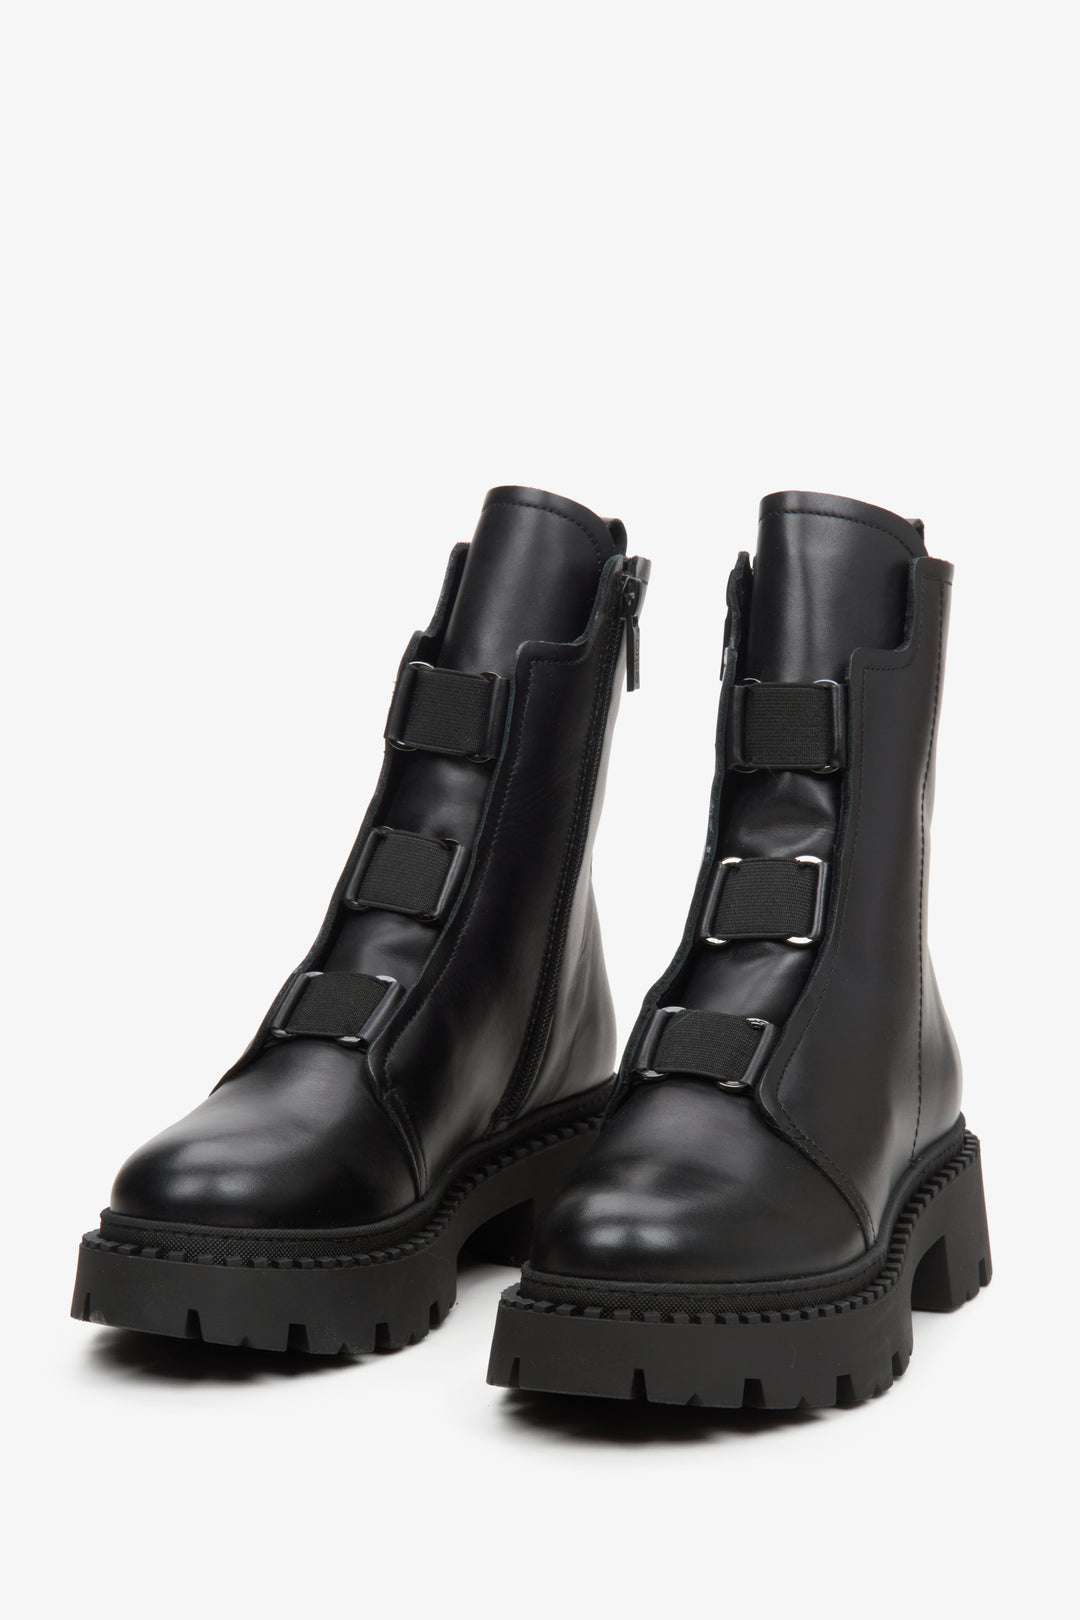 Botki damskie z miękką cholewą Estro w kolorze czarnym - zbliżenie na przód butów.